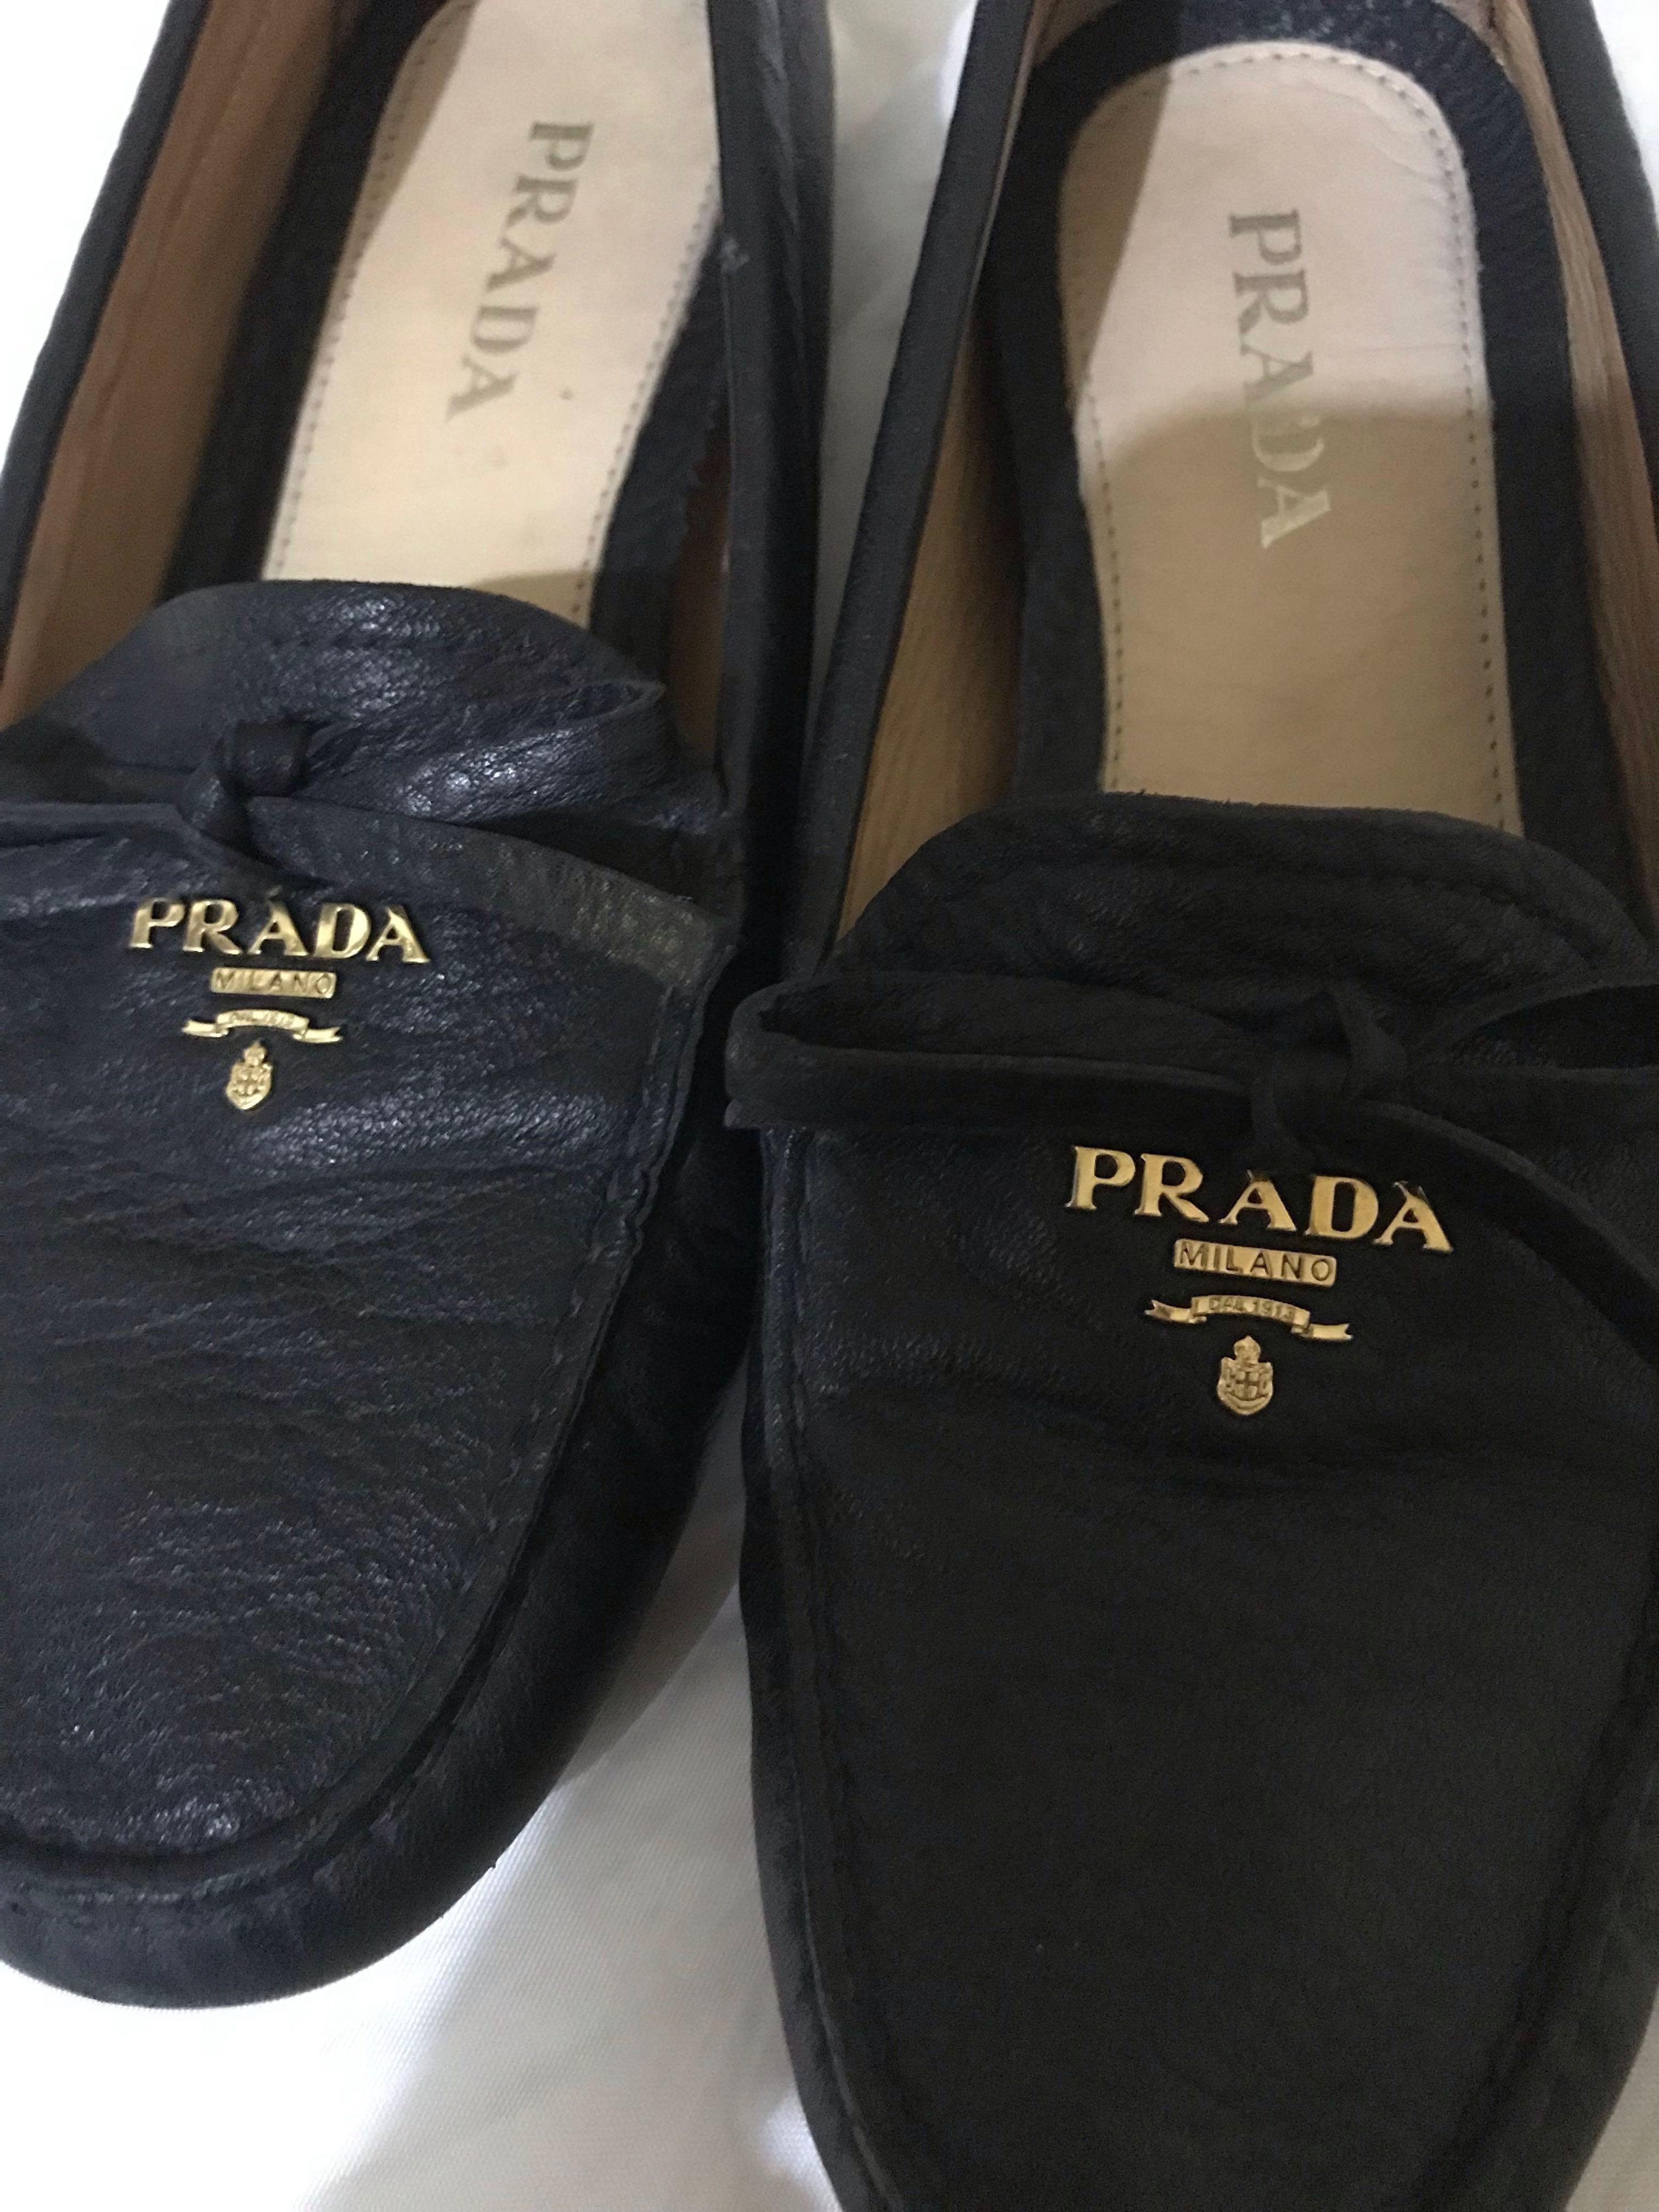 prada driving shoes womens